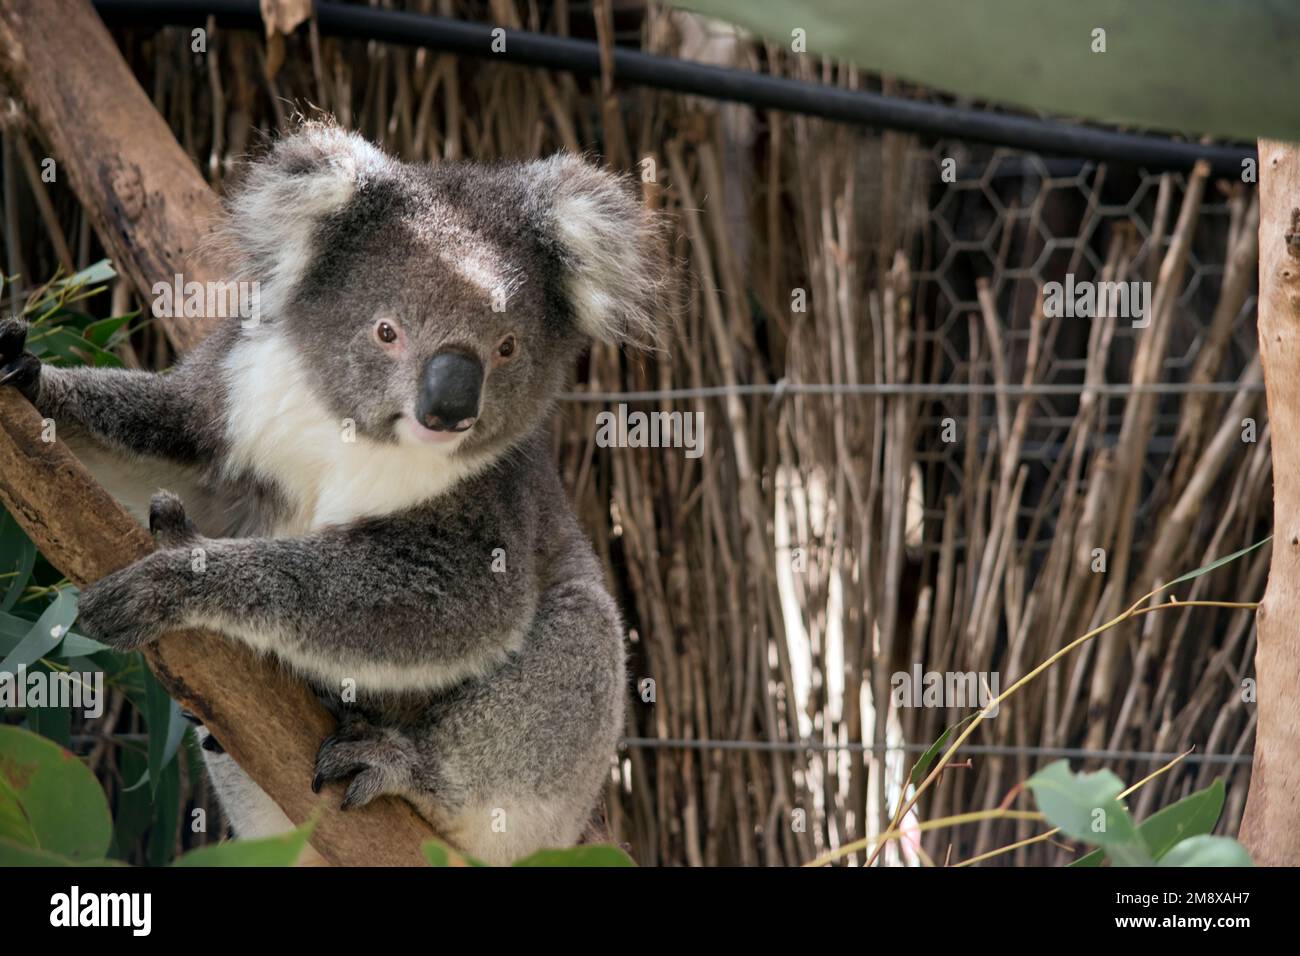 il koala è un marsupiale grigio con orecchie bianche e soffici. I koala possono arrampicarsi sugli alberi con i loro artigli affilati. Foto Stock